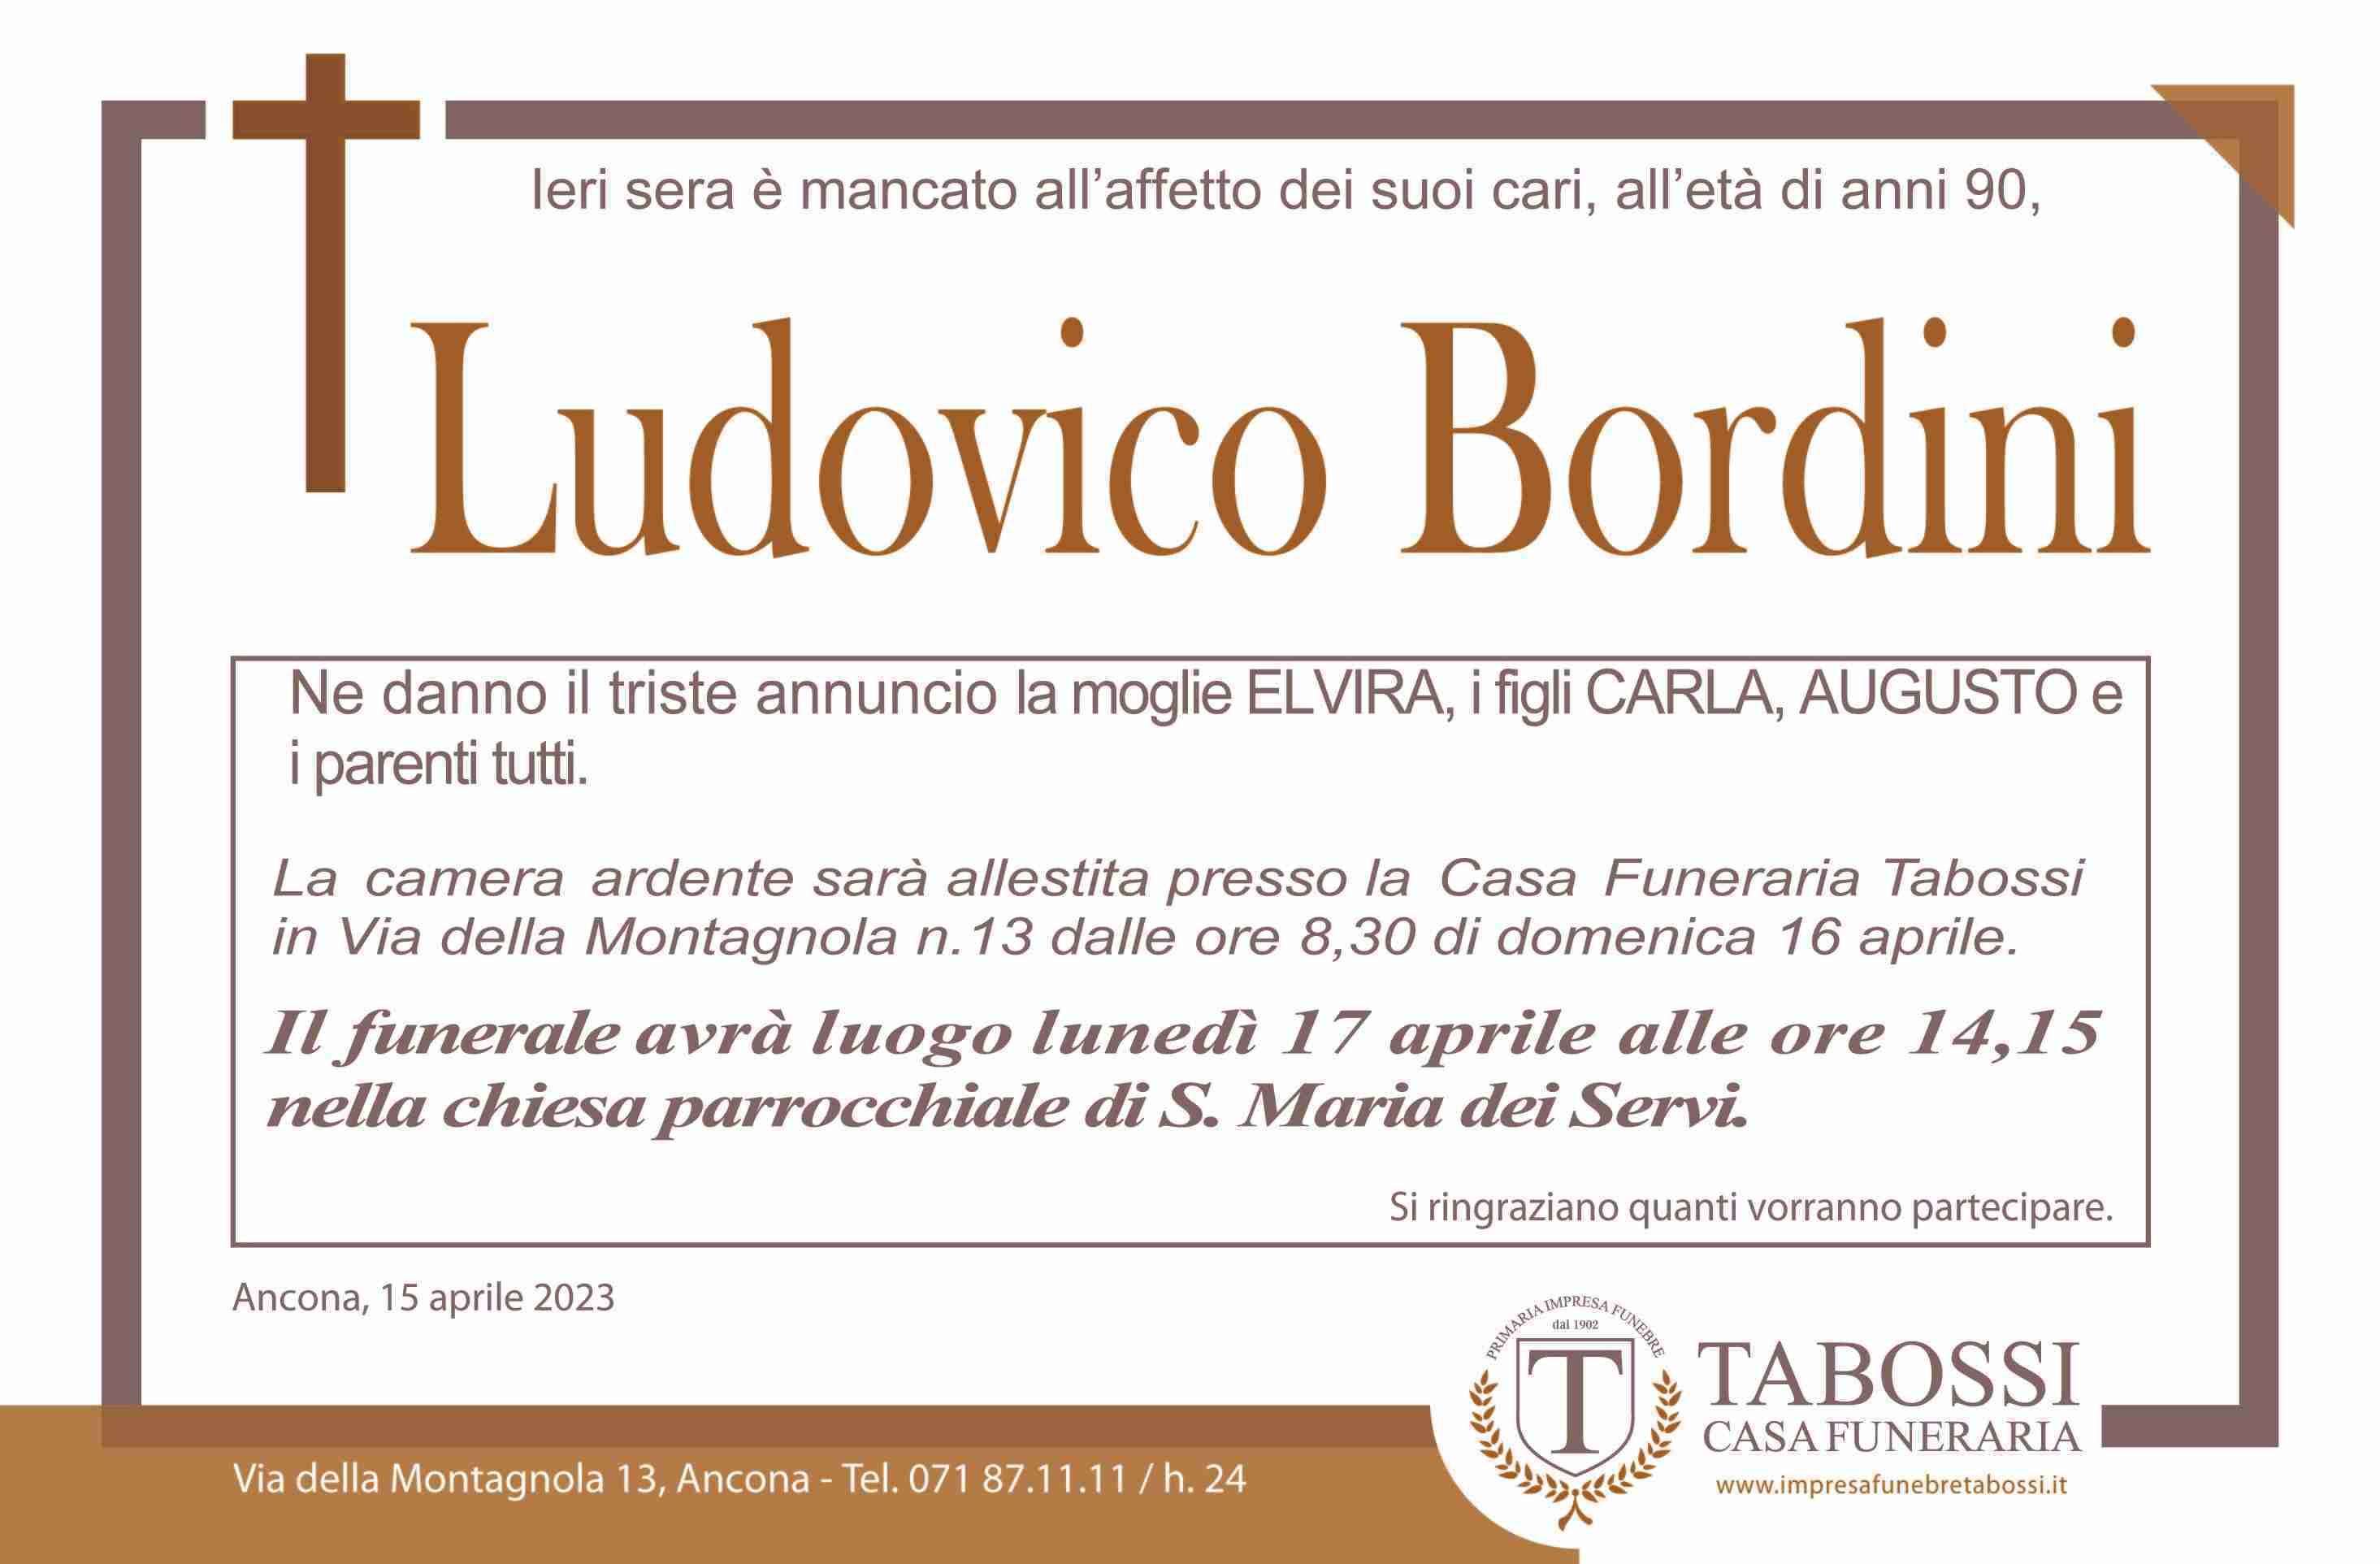 Ludovico Bordini